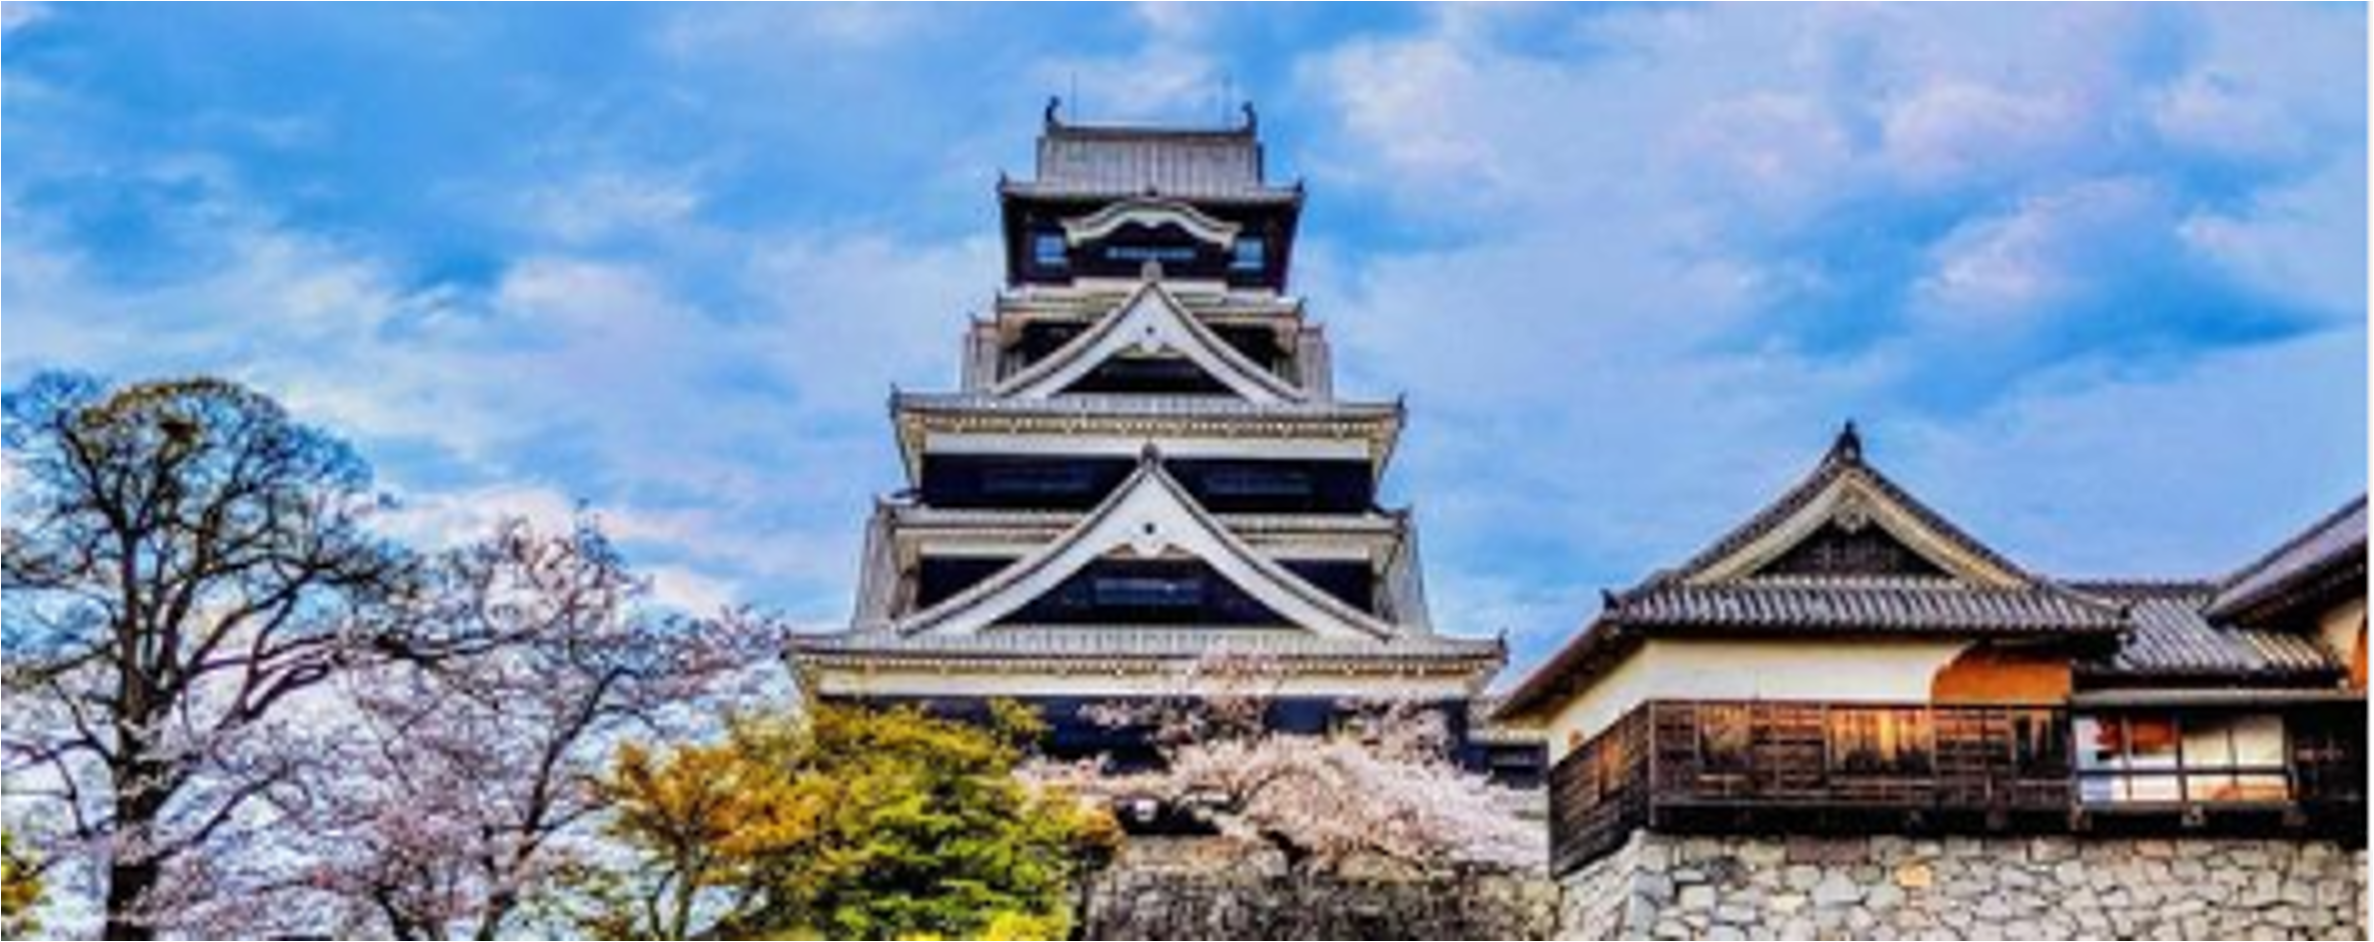 熊本城が桜と青空に囲まれている